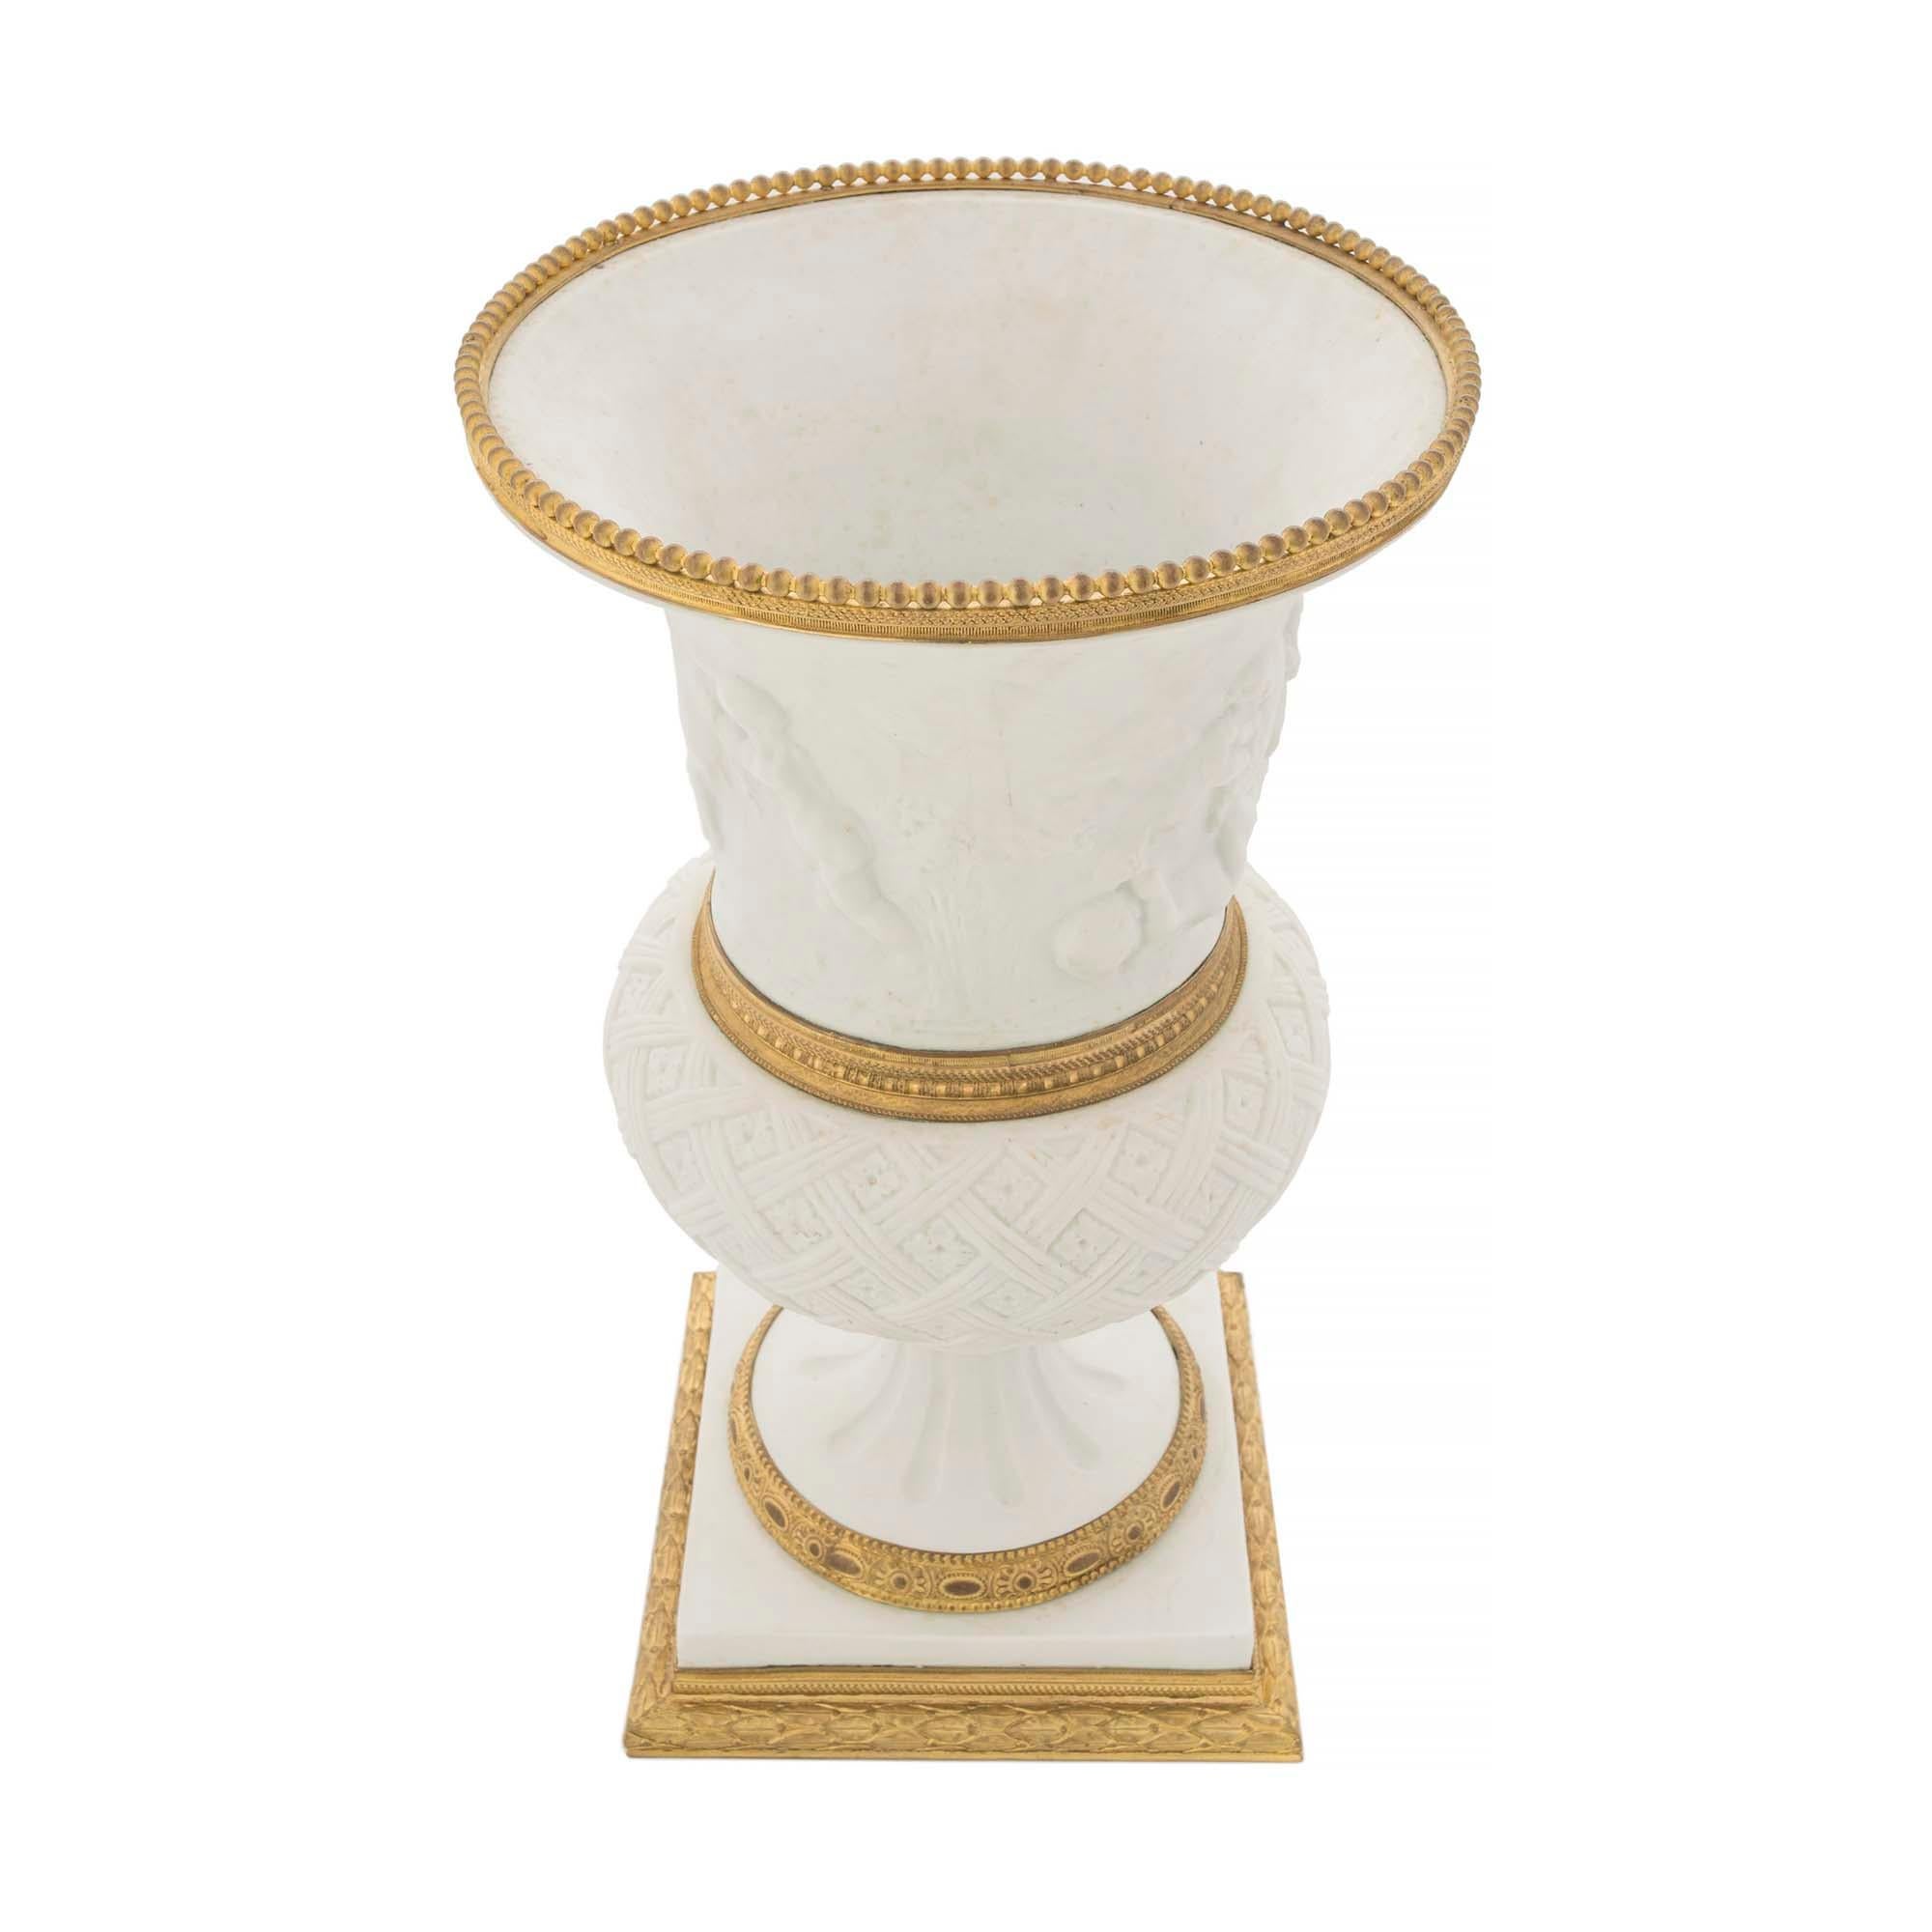 Eine sehr schöne französische Vase aus dem 19. Jahrhundert aus Porzellan und Ormolu von Louis XVI de Sèvres im Medici-Design. Die Vase steht auf einem ziselierten Ormolu-Sockel unter einer quadratischen Stütze und einem geriffelten Sockel, der mit